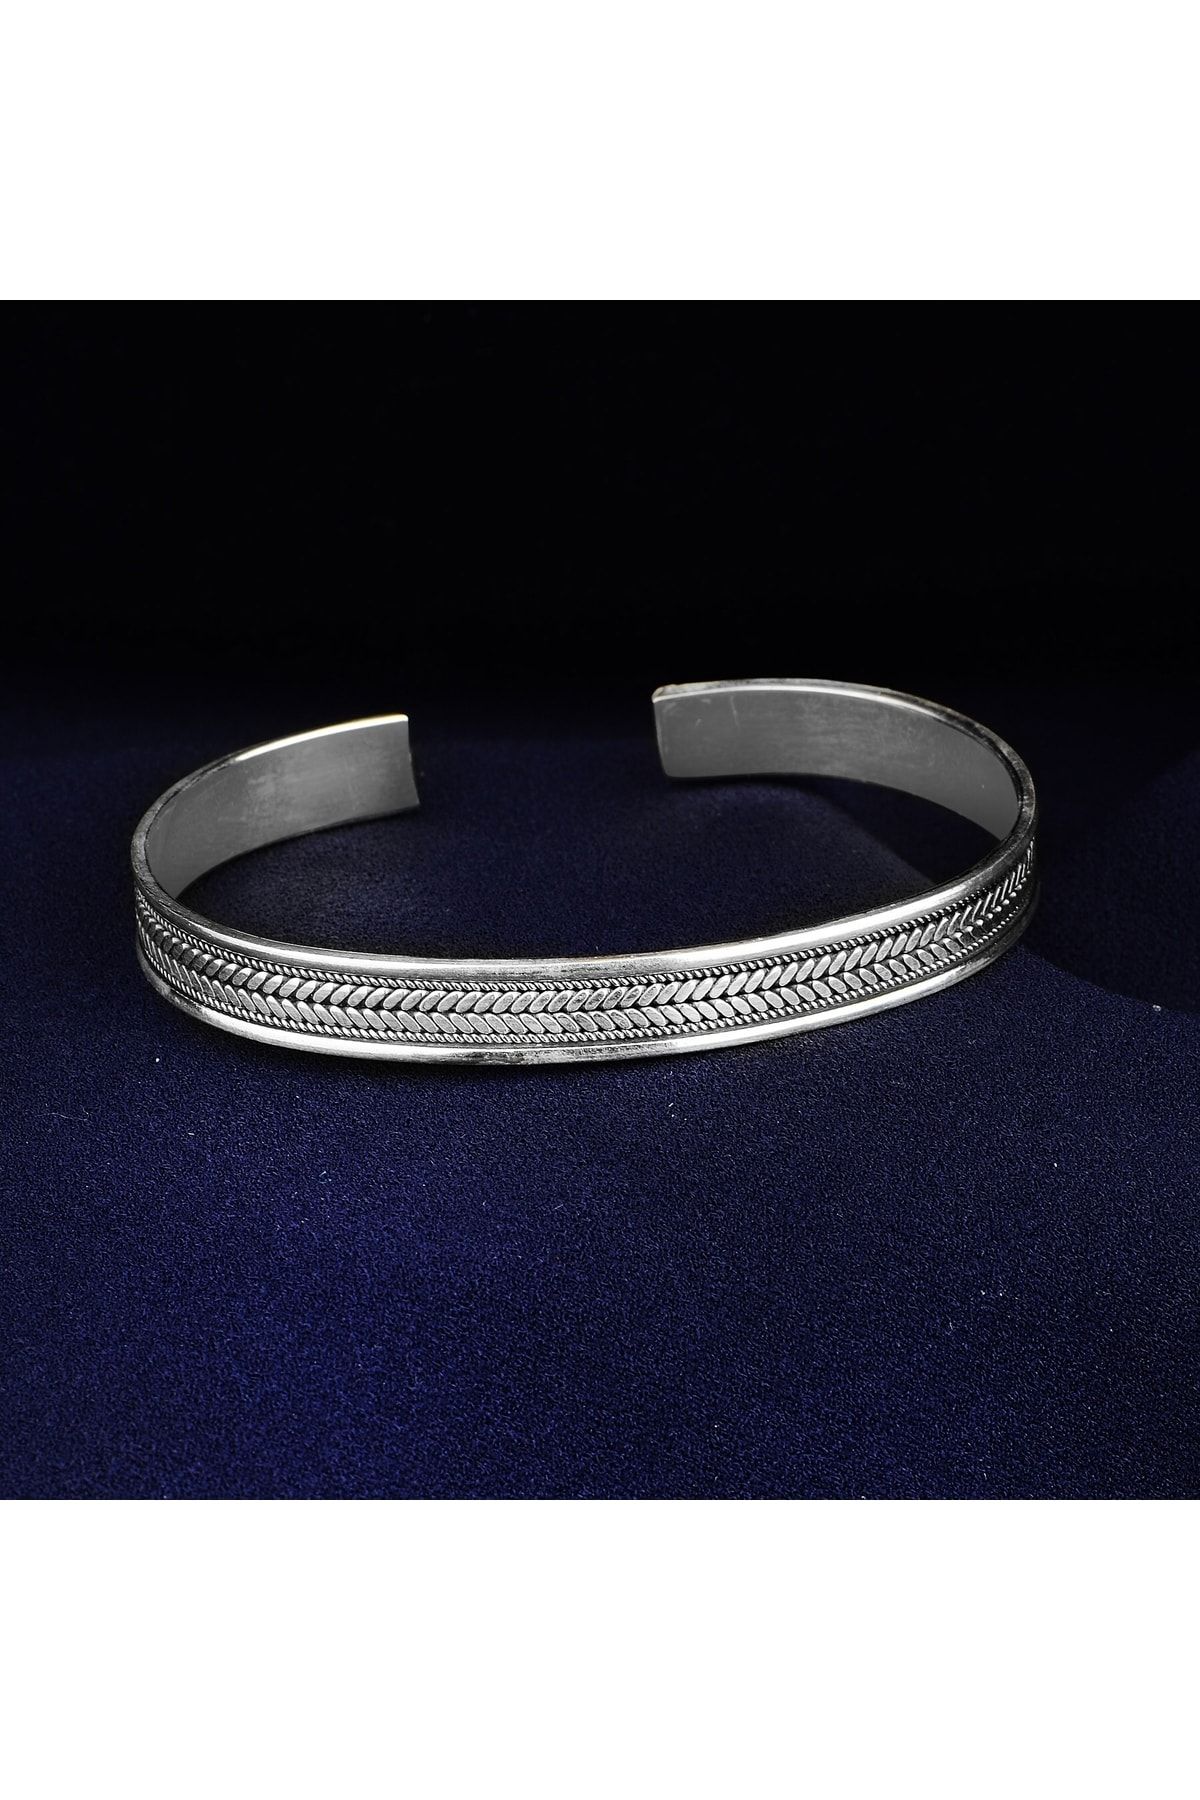 Mercan Silver Gümüş El Yapımı Örgü Modeli Bilezik